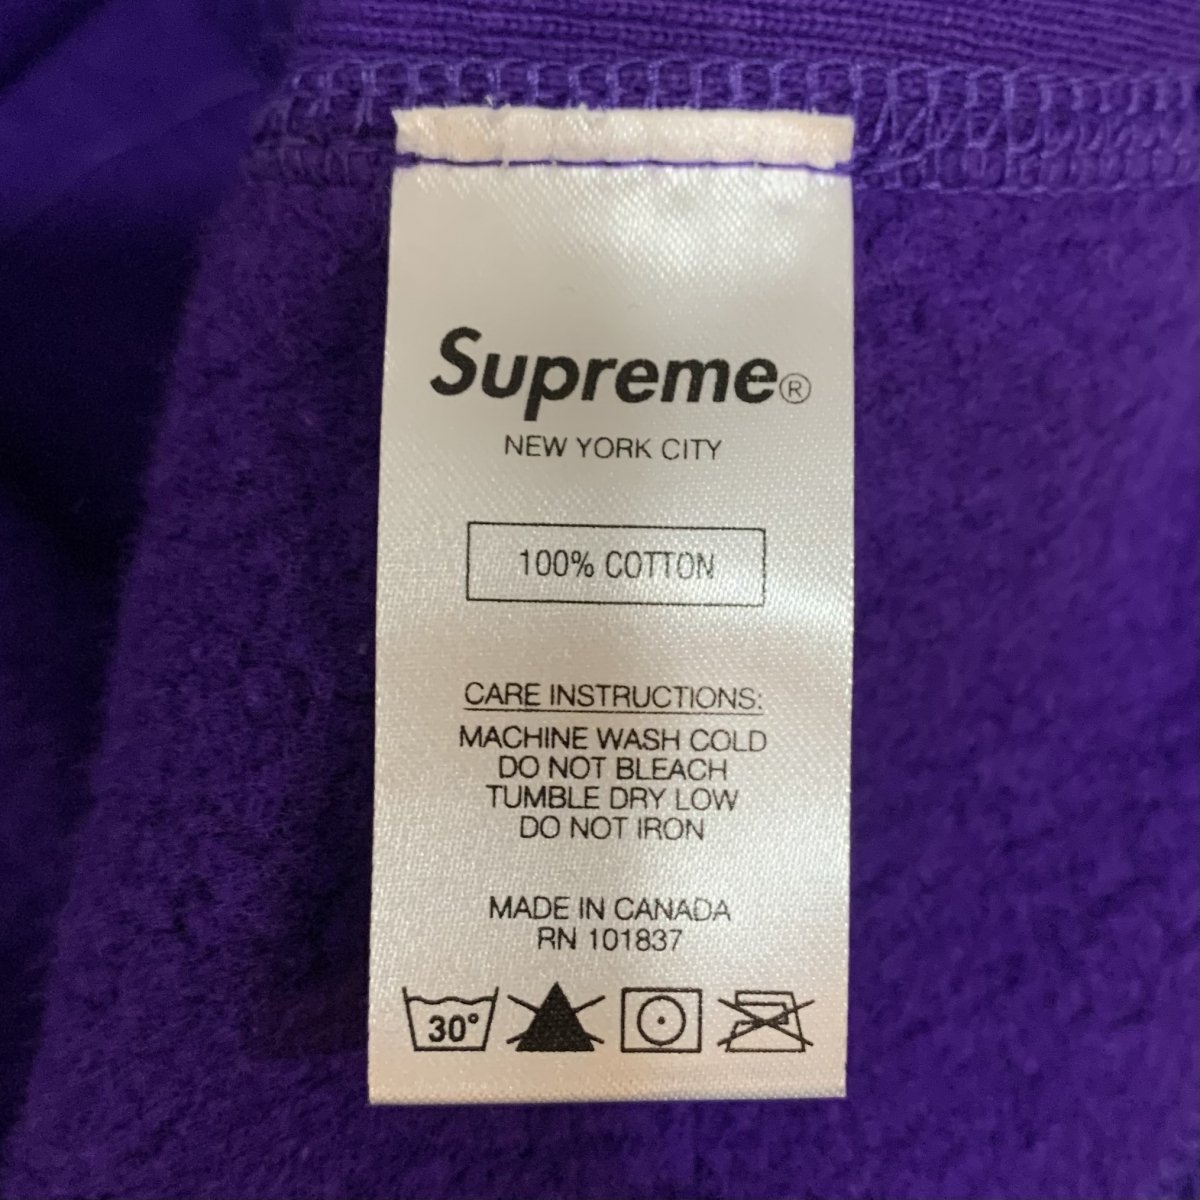 新品 20AW SUPREME Cross Box Logo Hooded Sweatshirt 紫 S